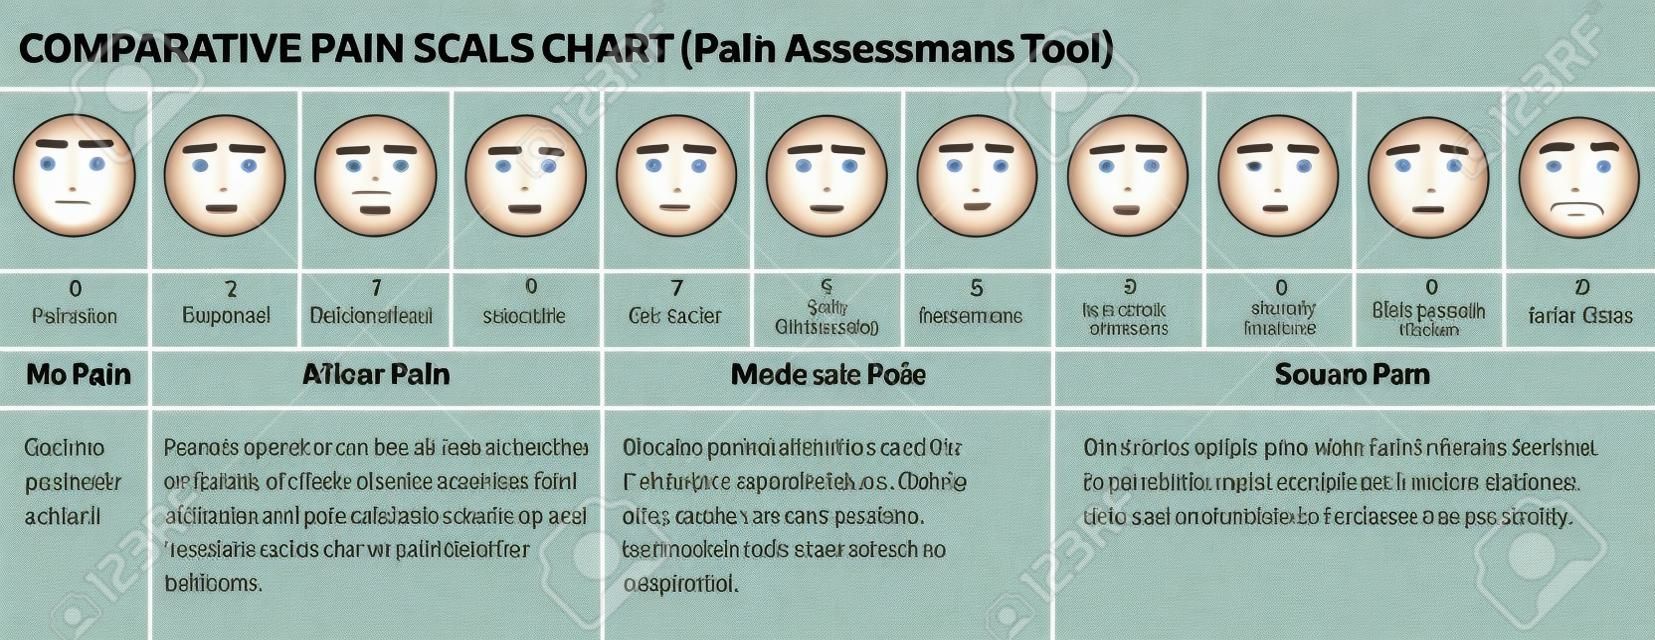 Se enfrenta a escala de dolor. escala de evaluación de los médicos del dolor. cuadro comparativo escala de dolor. Caras herramienta de valoración del dolor. Visual Chart dolor.